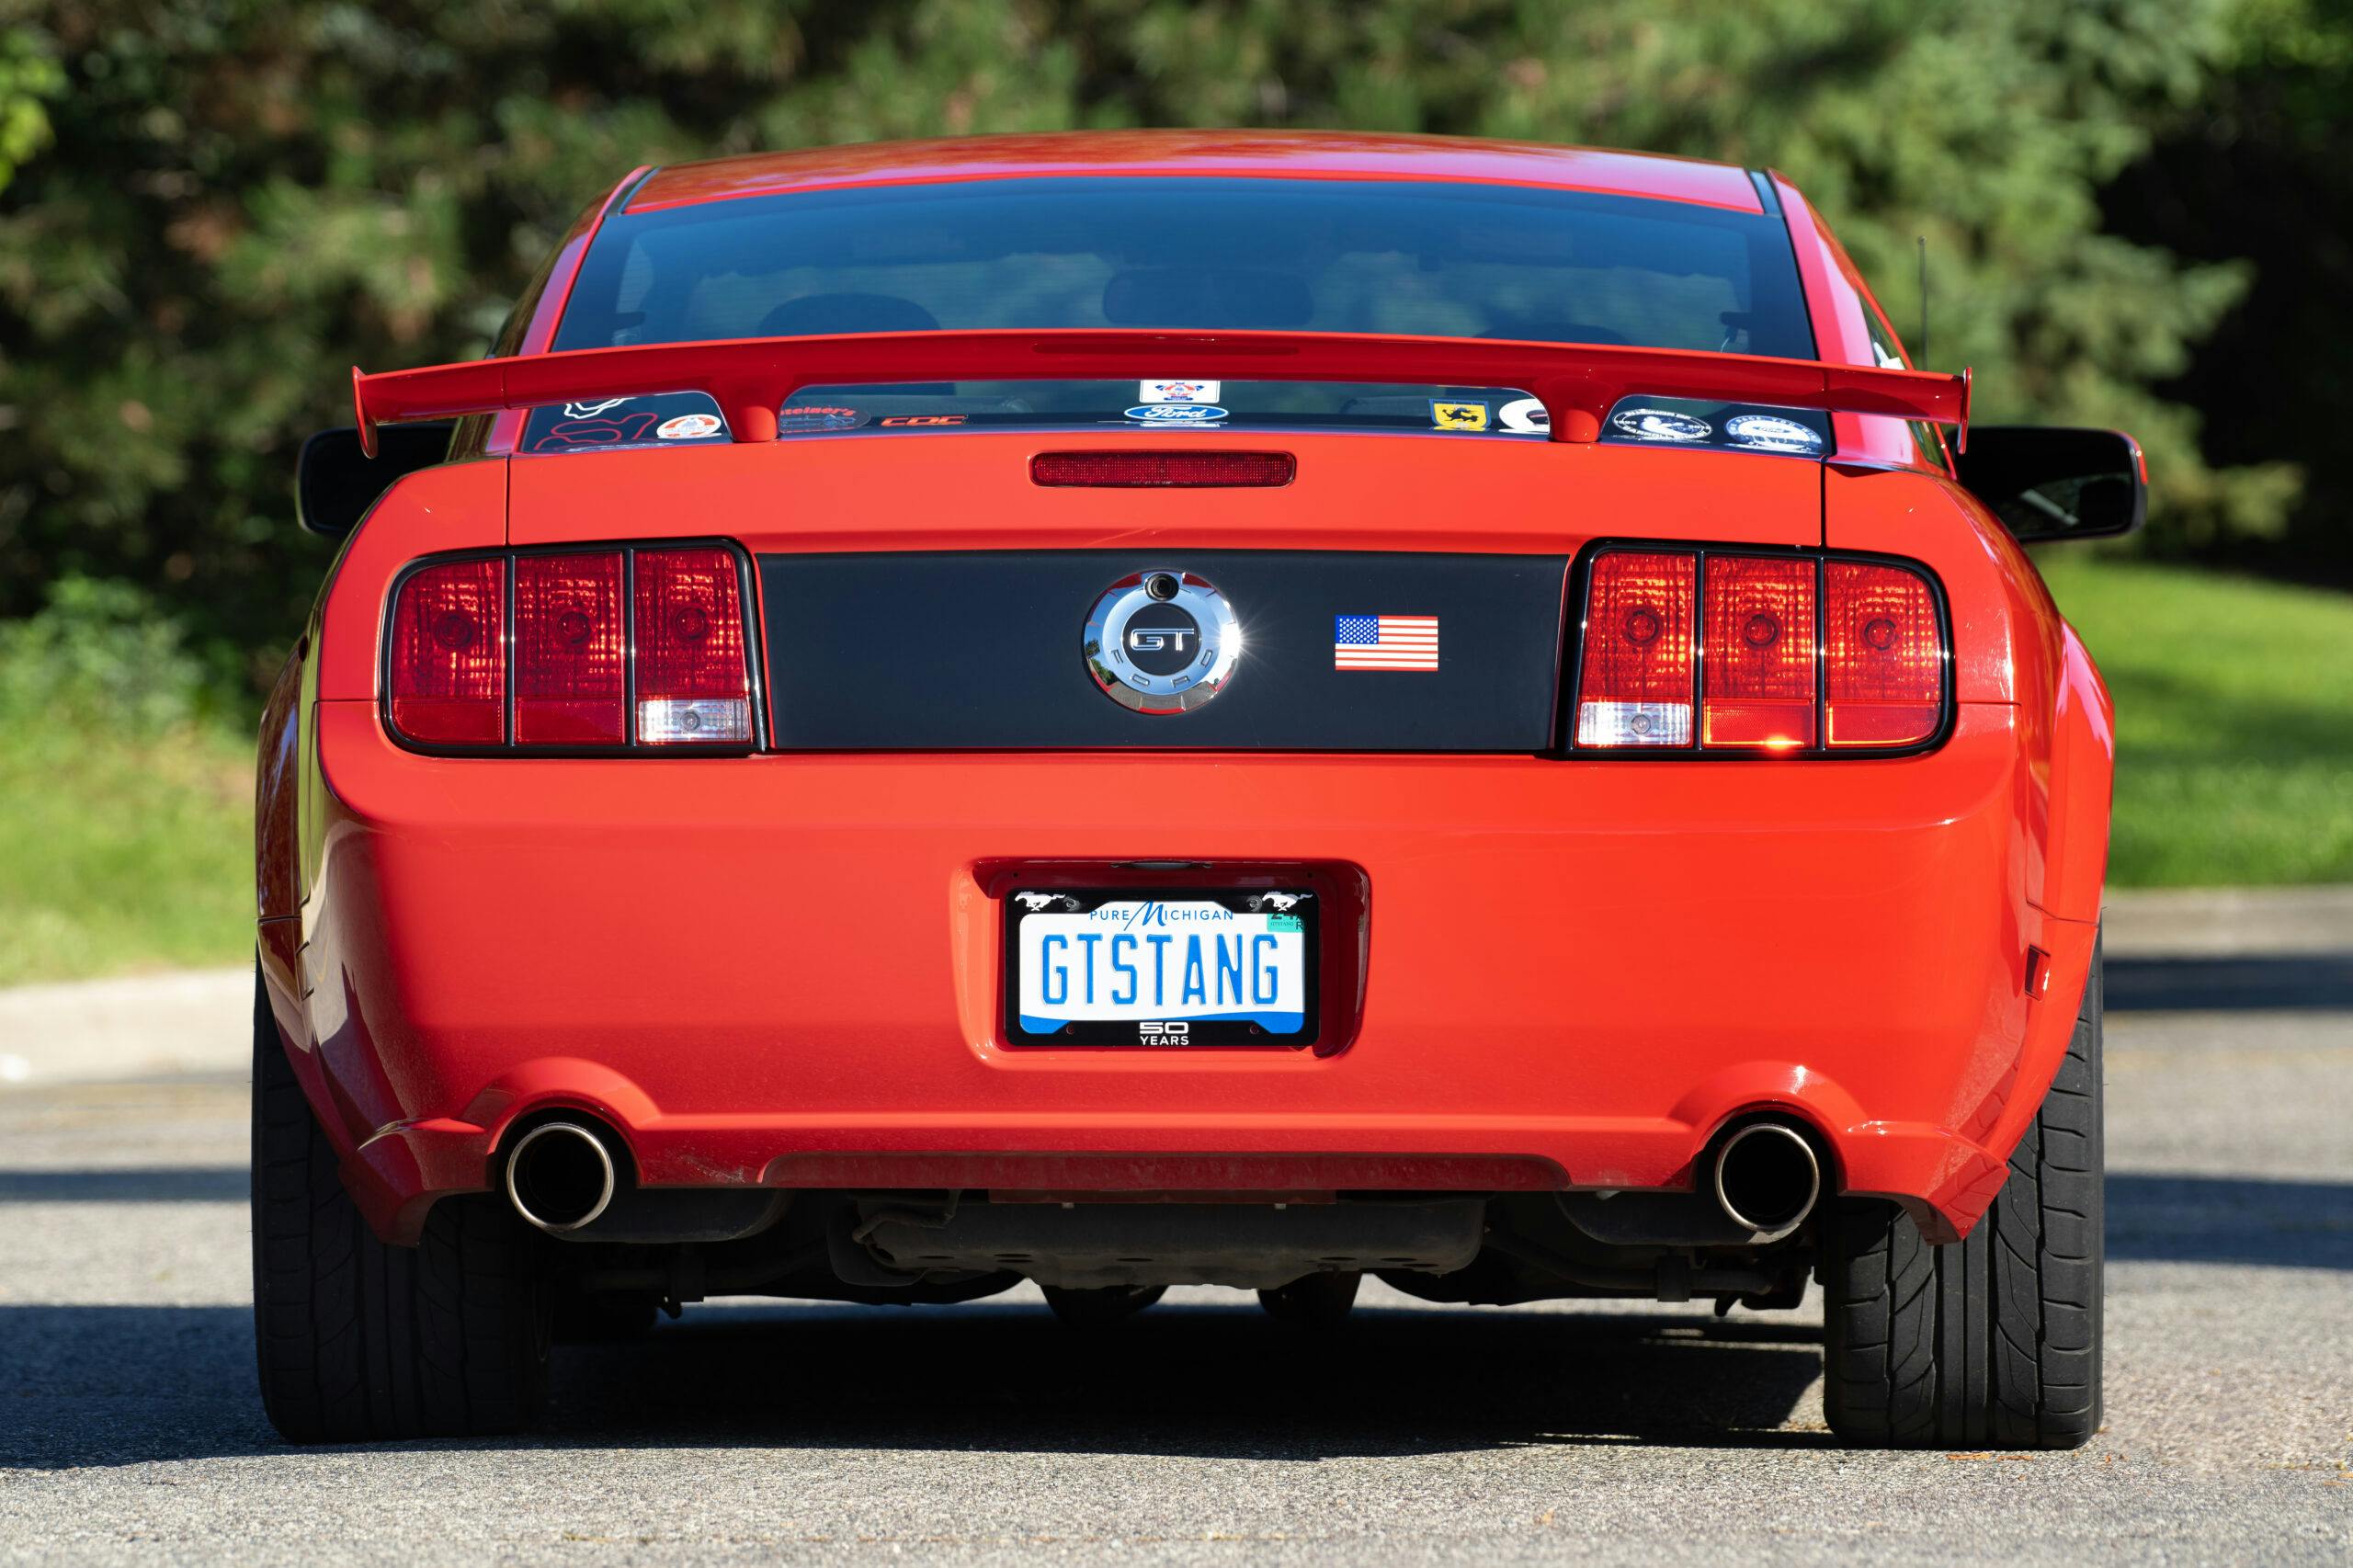 2006 Mustang GT custom rear